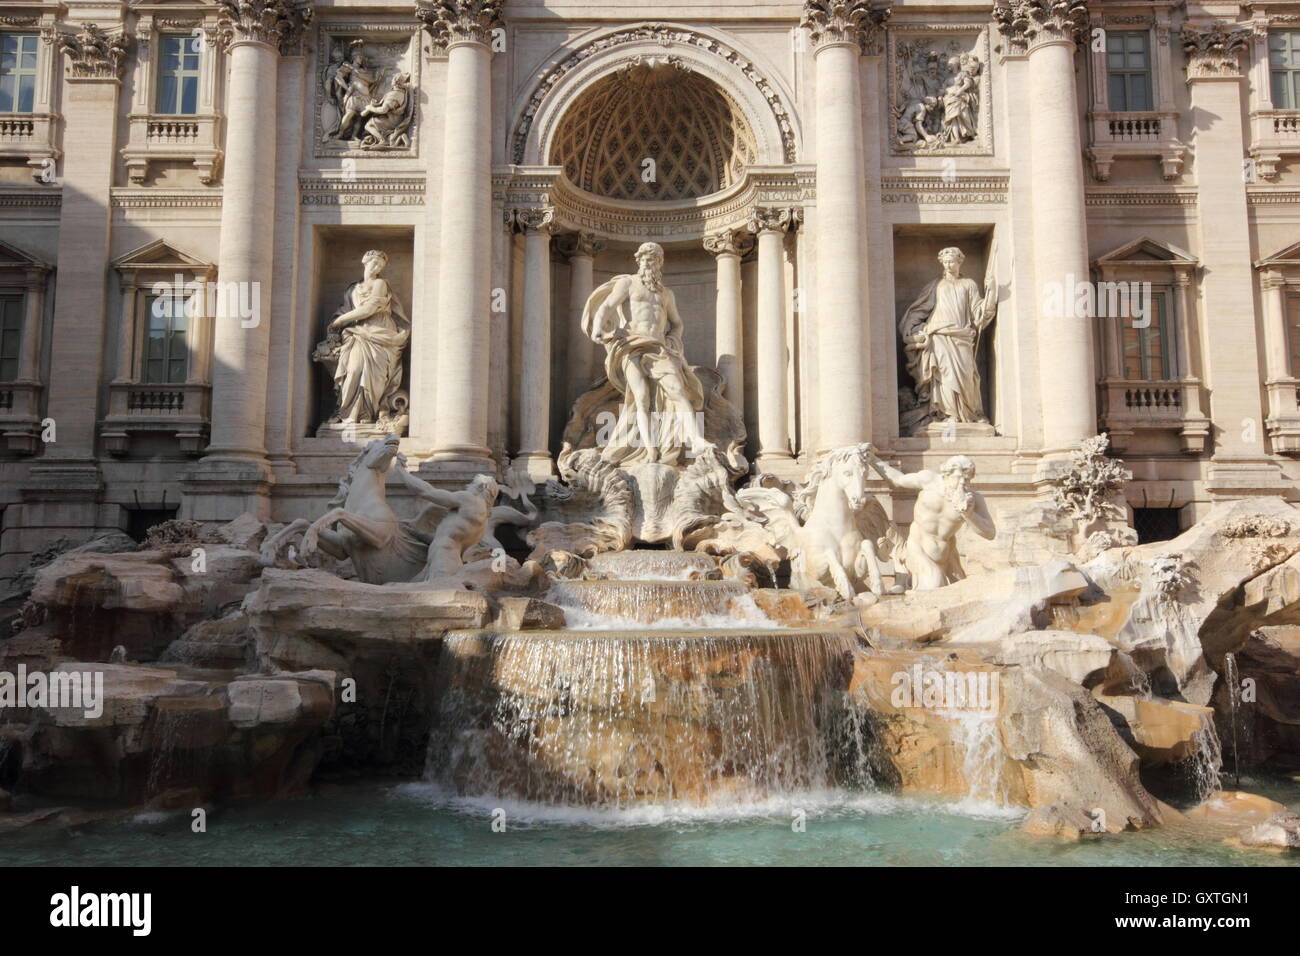 La bella e famosa Fontana di Trevi, Roma, Italia Foto Stock